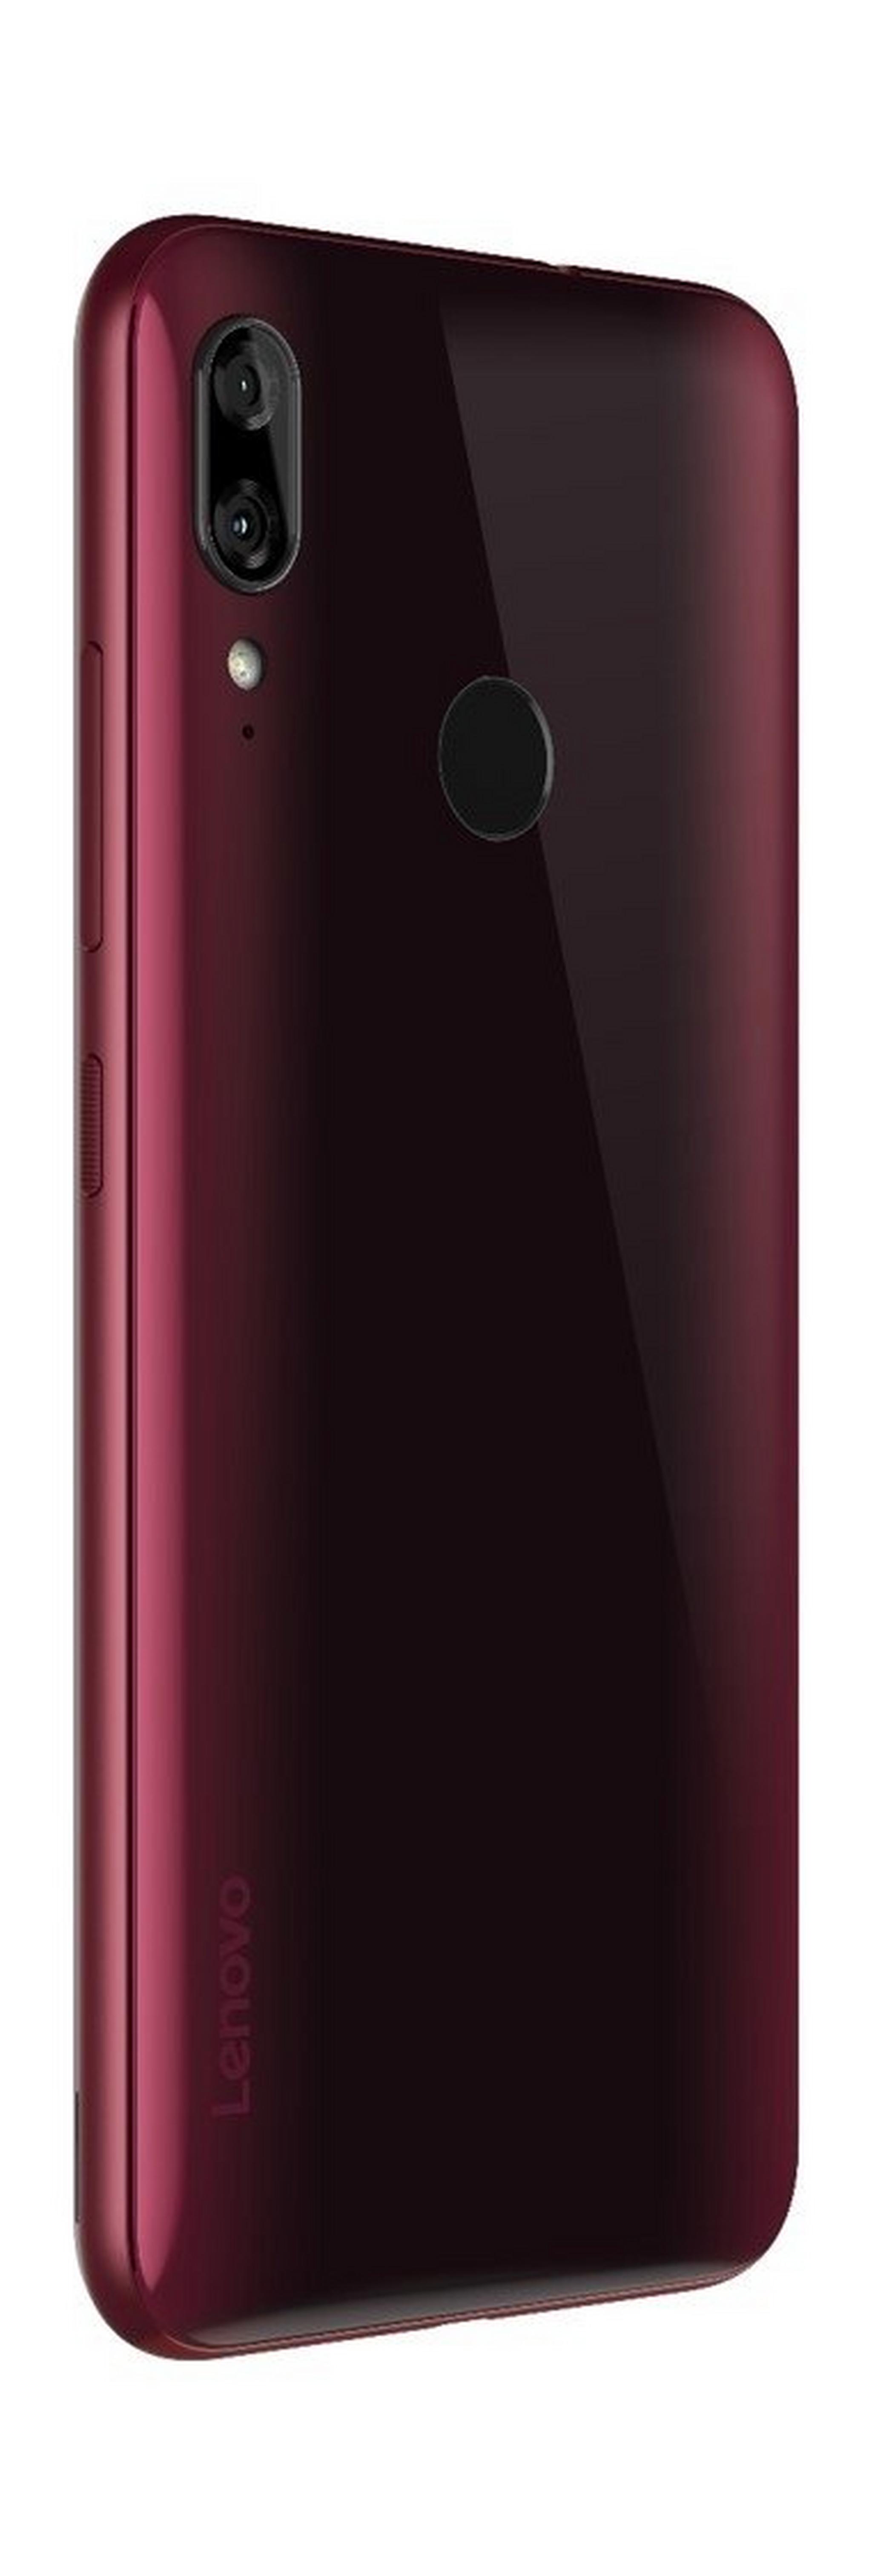 Lenovo K10 64GB Phone - Red